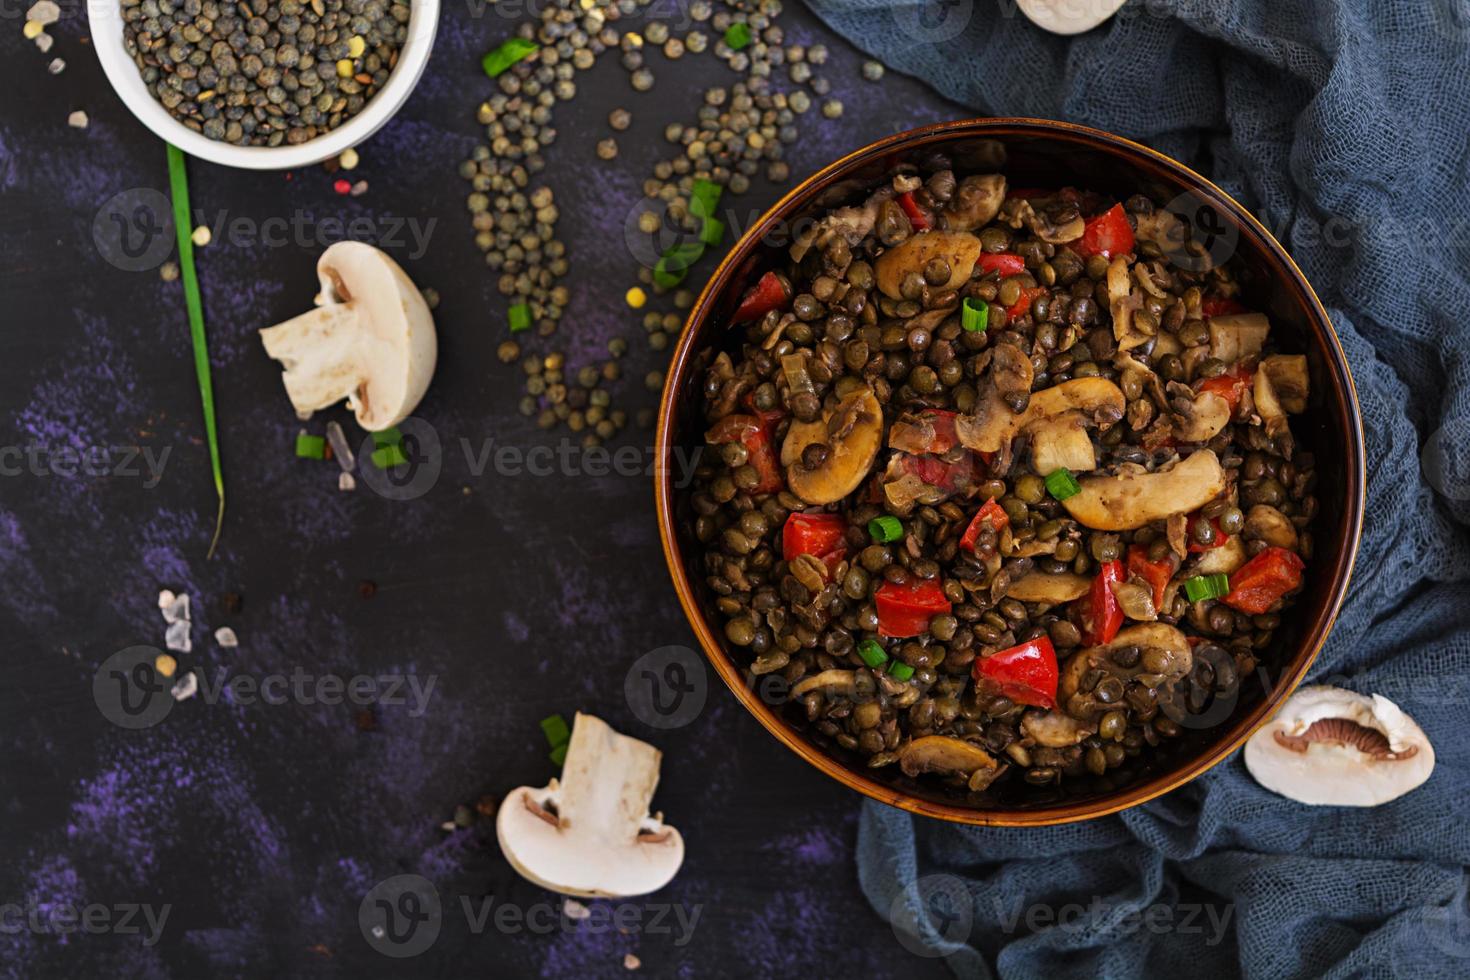 heerlijke linzen met peper en champignons op donkere achtergrond foto